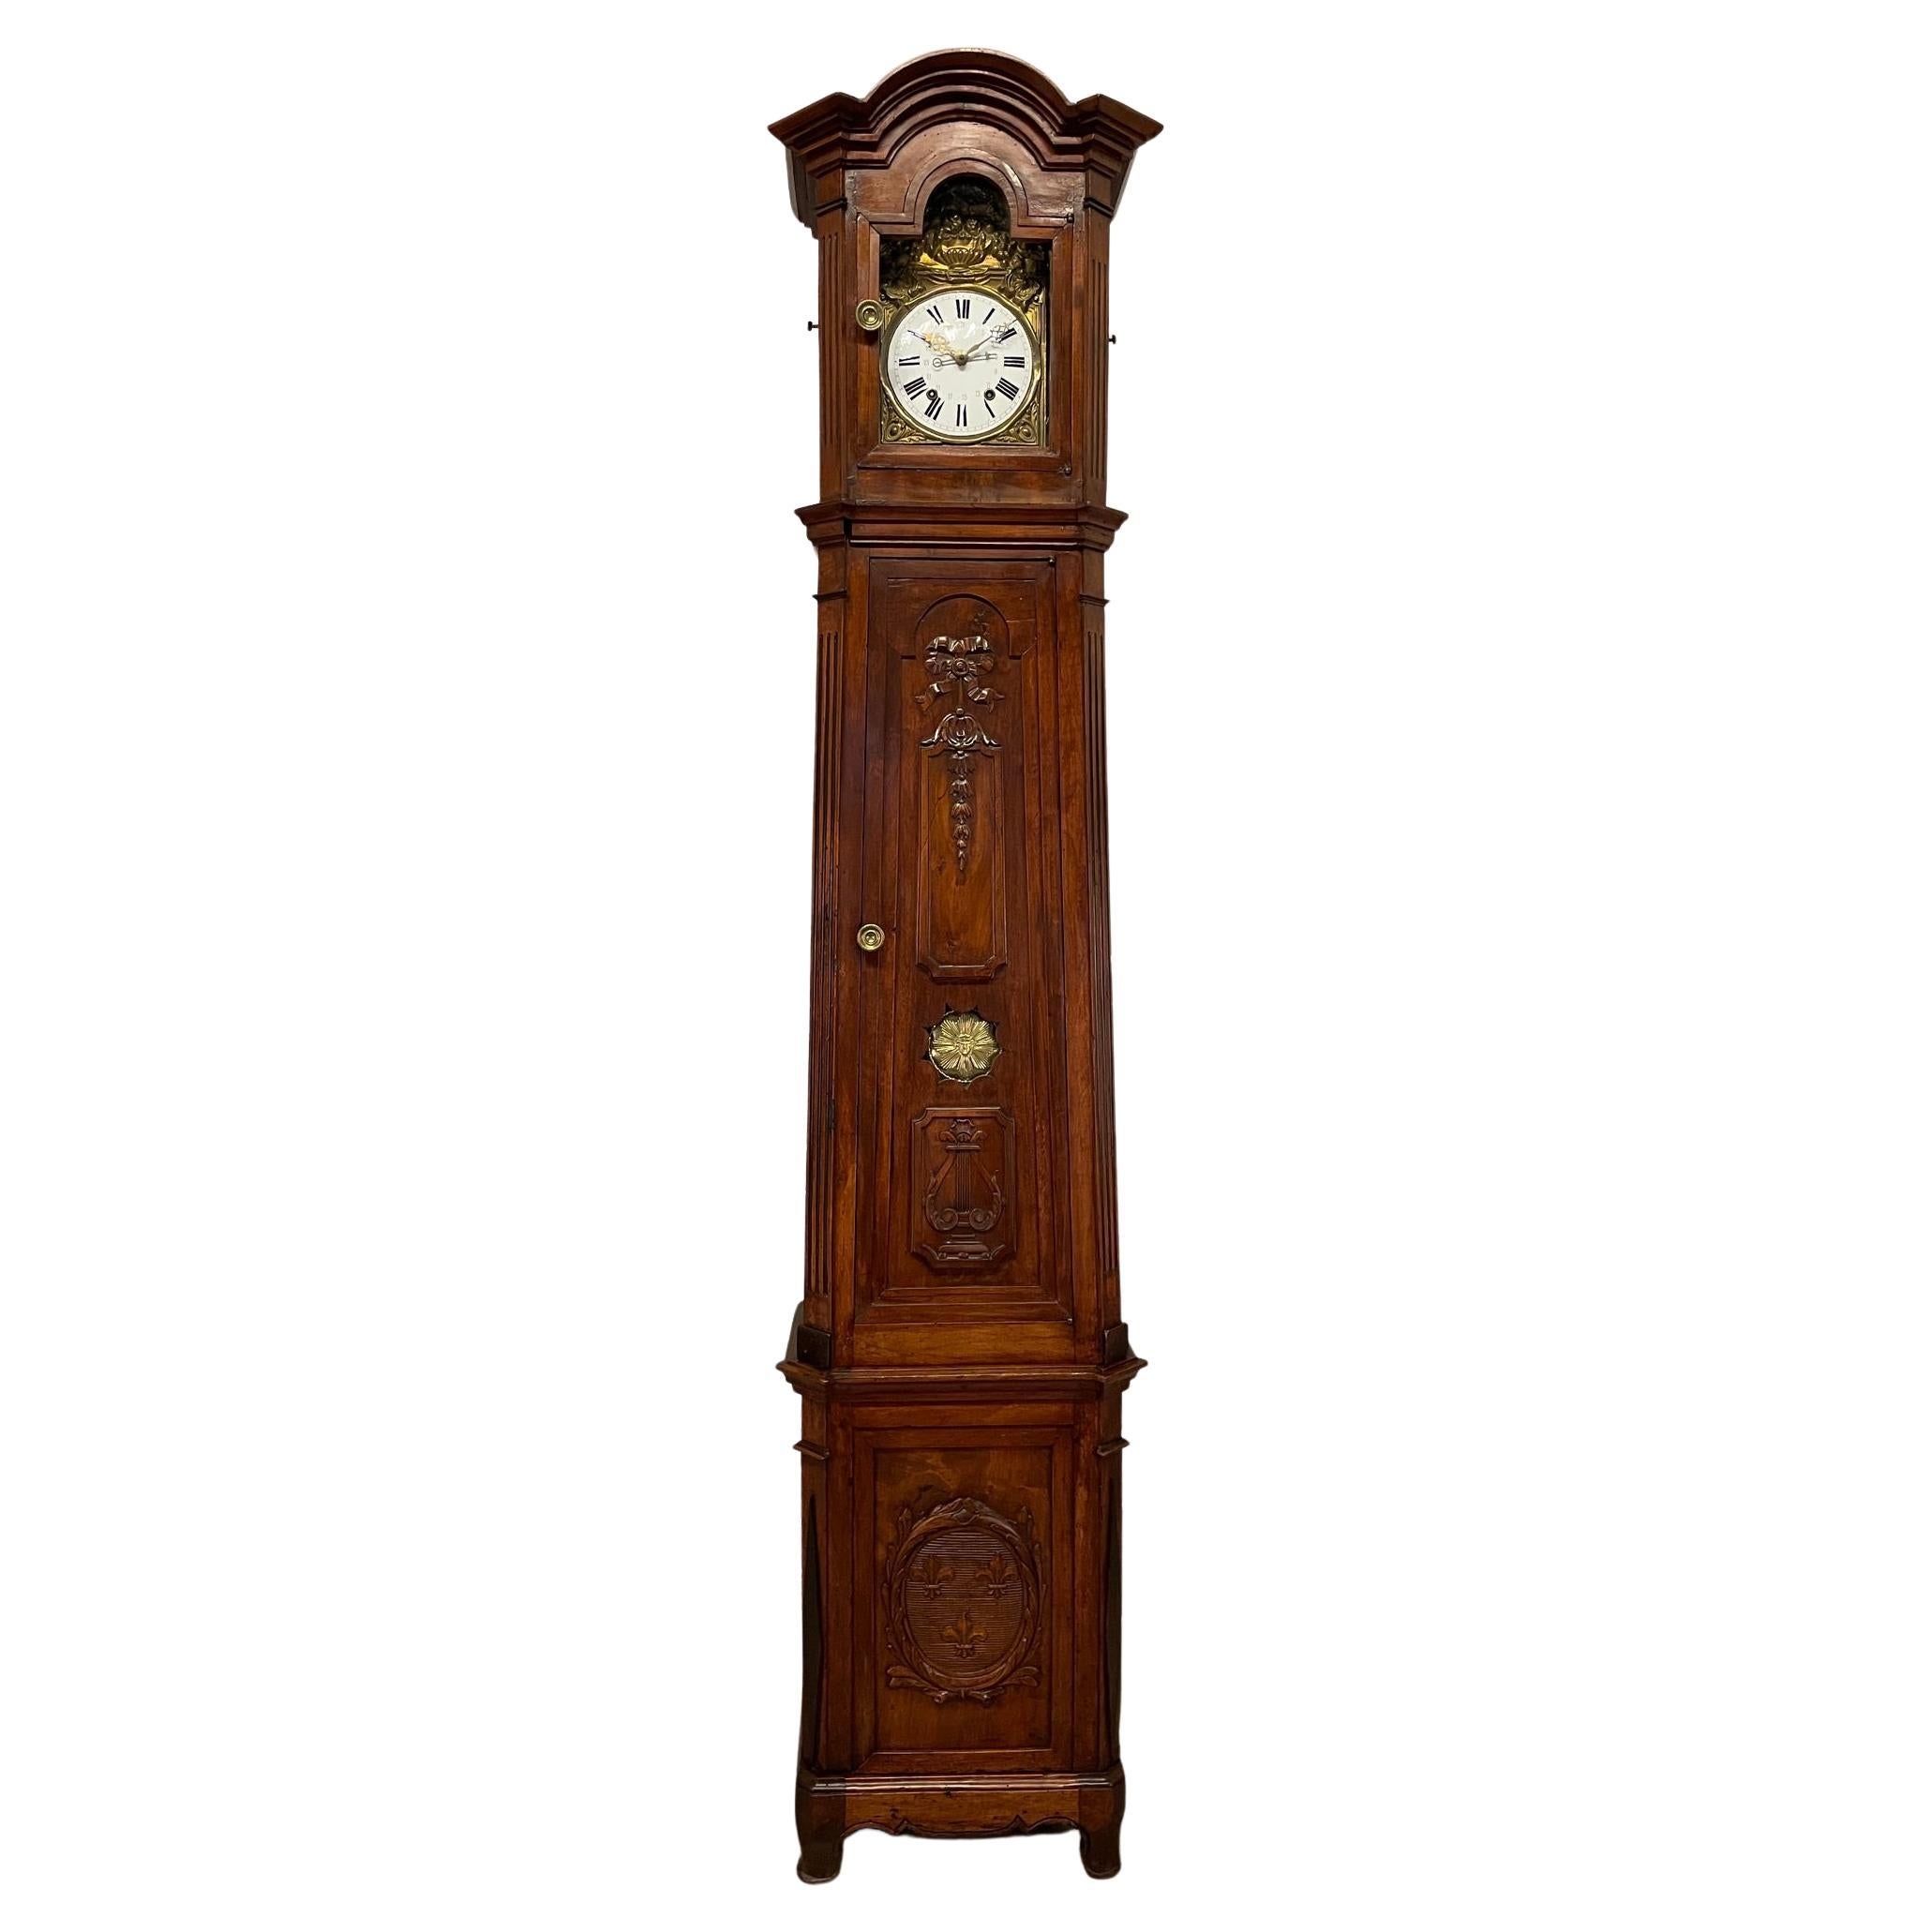 Französische hohe Gehäuseuhr oder Horloge De Parquet aus dem 19. Jahrhundert